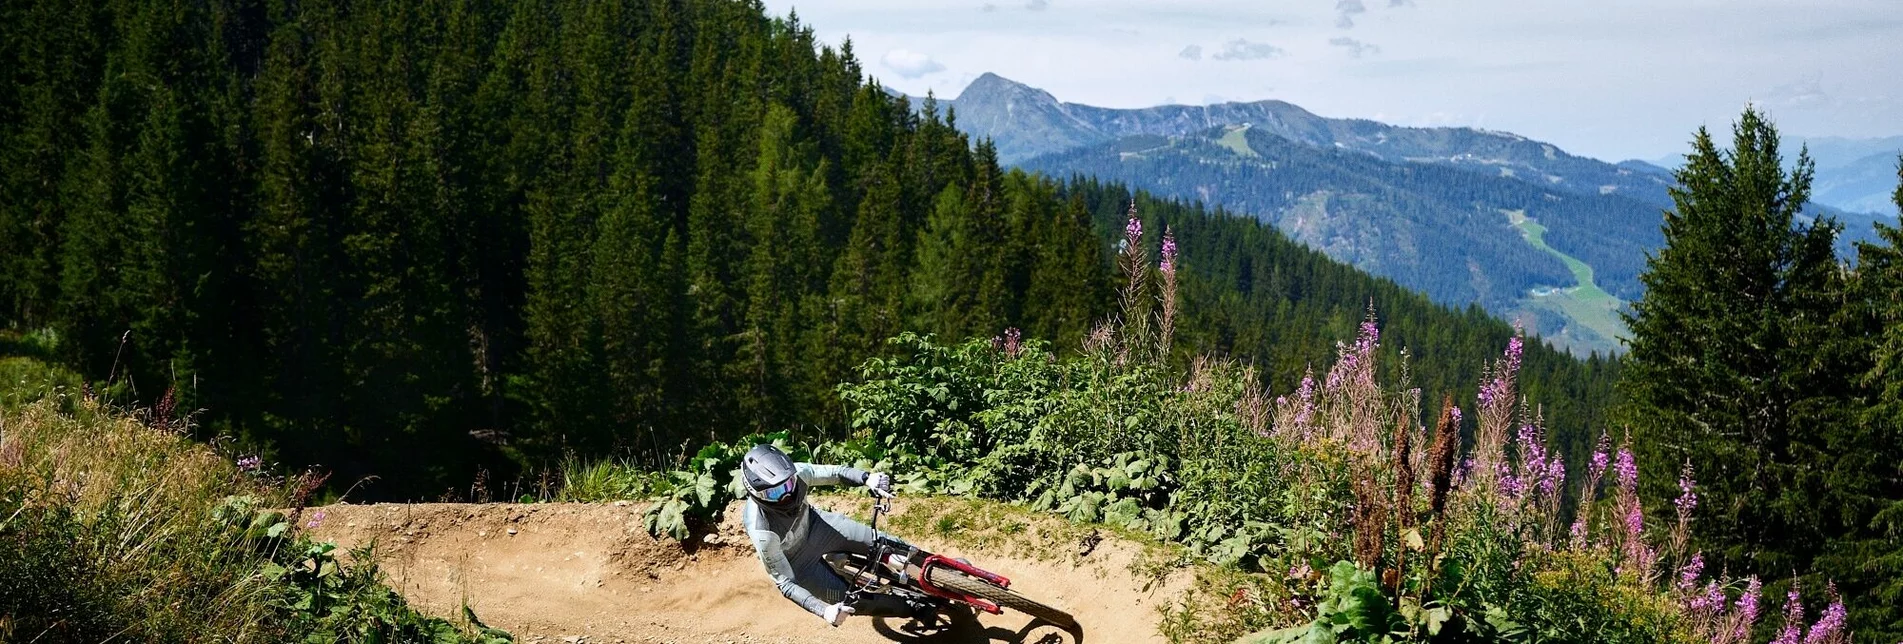 Mountain Biking Rookie Downhill - Touren-Impression #1 | © Erlebnisregion Schladming-Dachstein